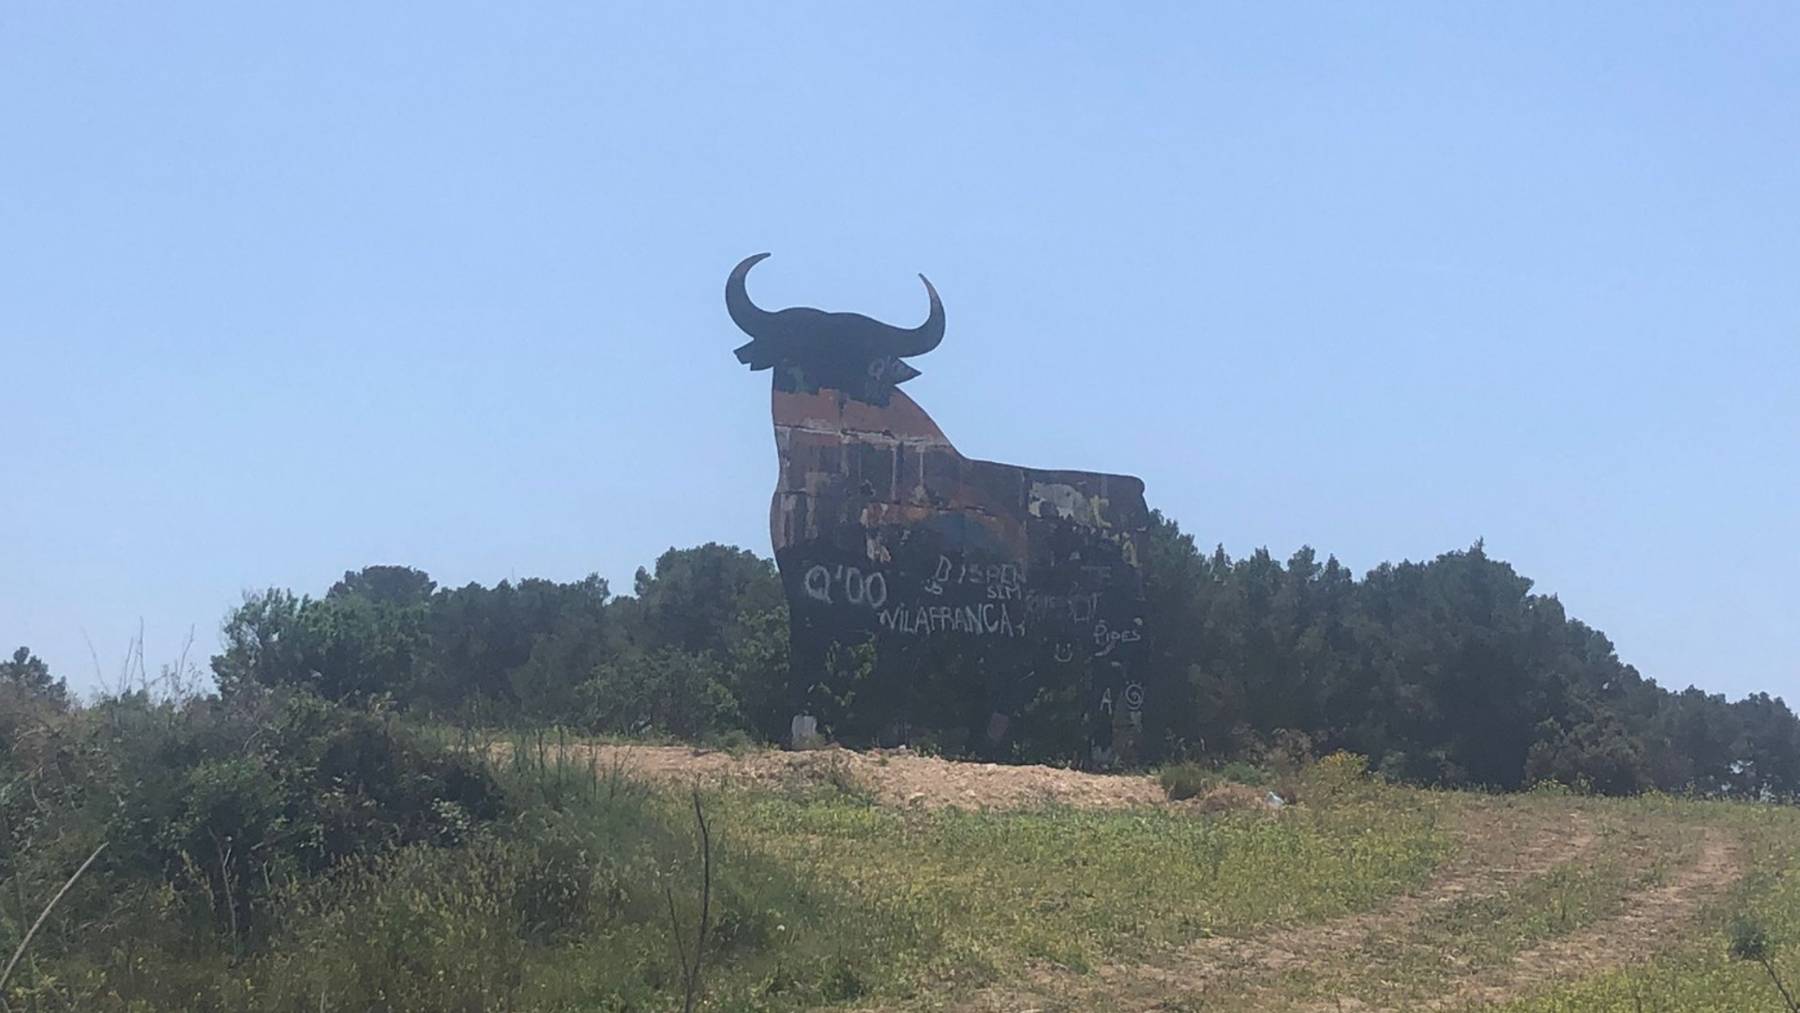 El toro de Osborne de Algaida ha sido levantado de nuevo aunque conserva las pintadas vandálicas.